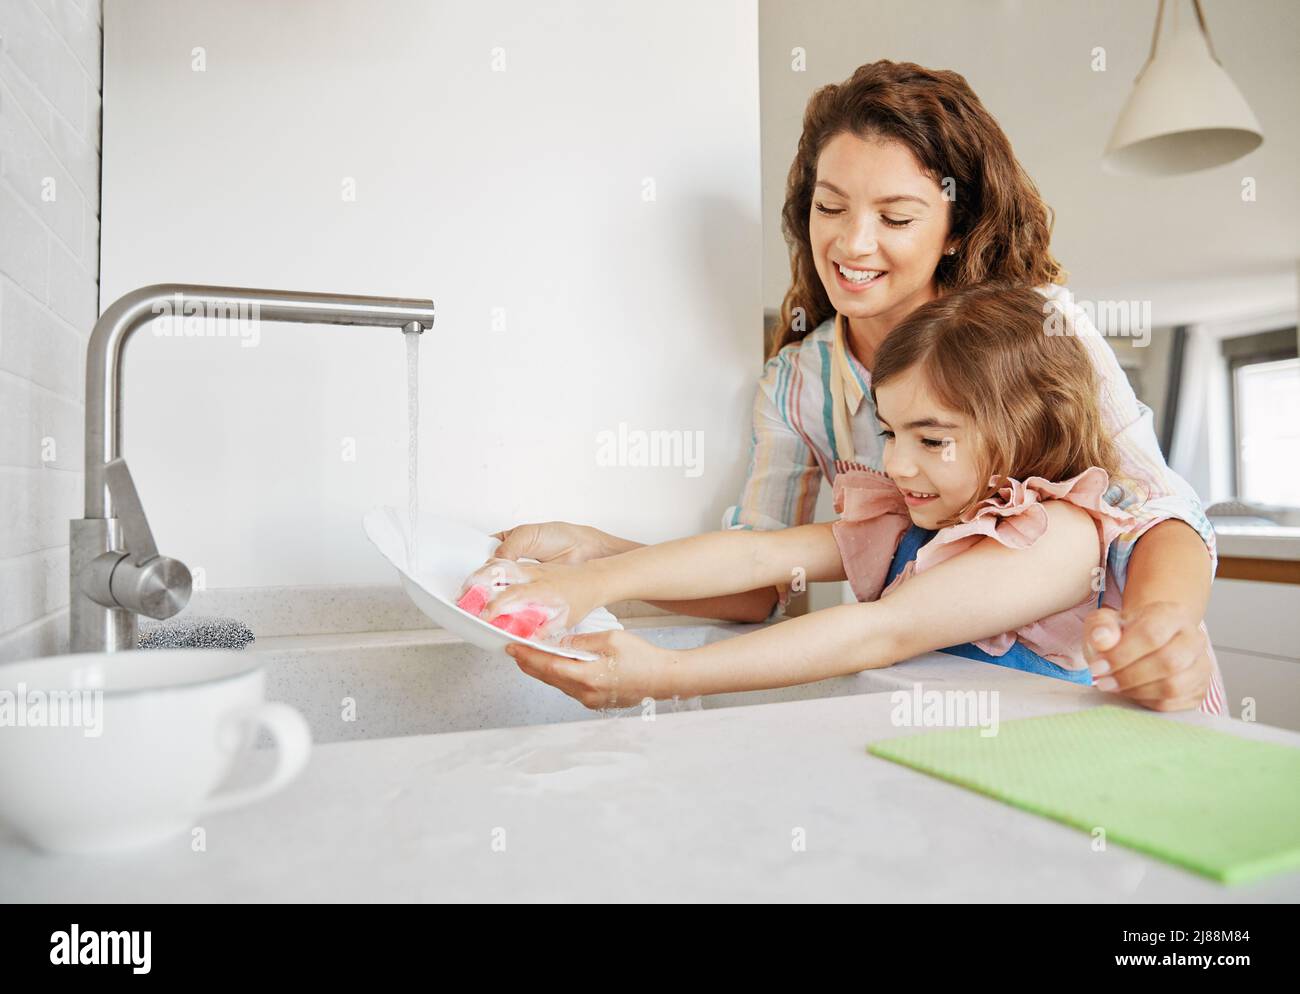 enfant cuisine plat maison travaux ménagers laver enfant mère aider évier gir chore maison eau famille Banque D'Images